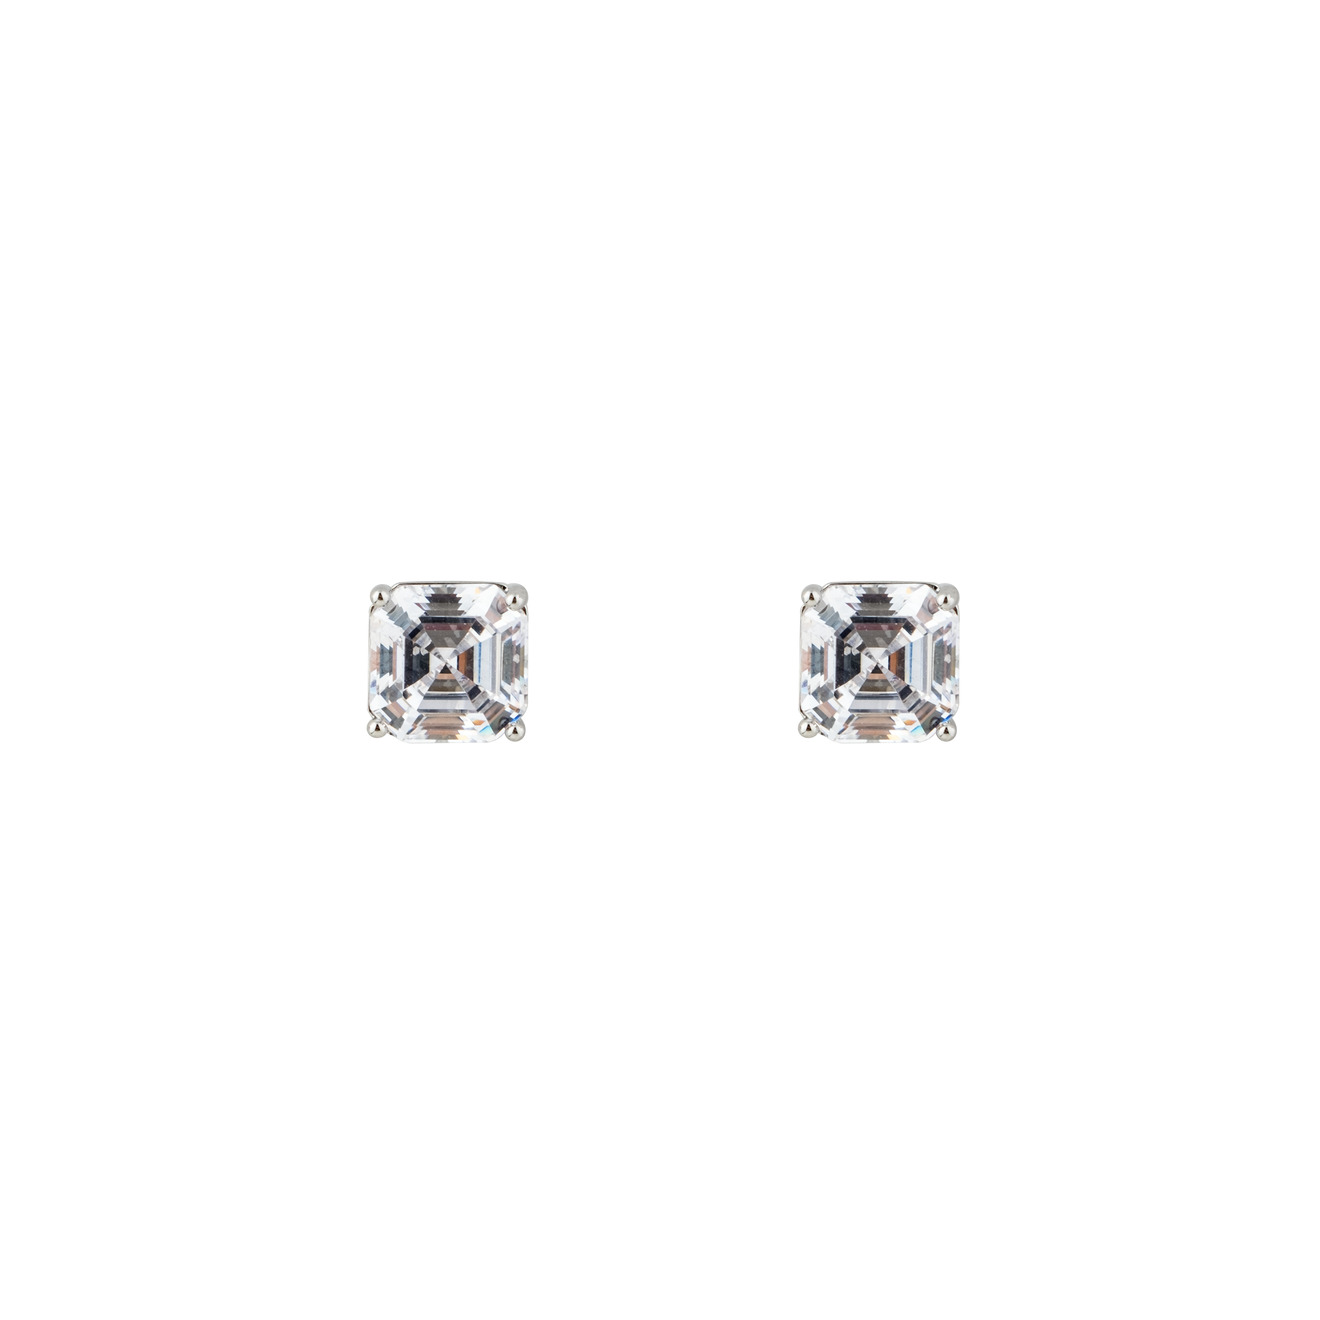 Herald Percy Серебристые серьги с белыми кристаллами herald percy серебристые серьги смайлики с кристаллами